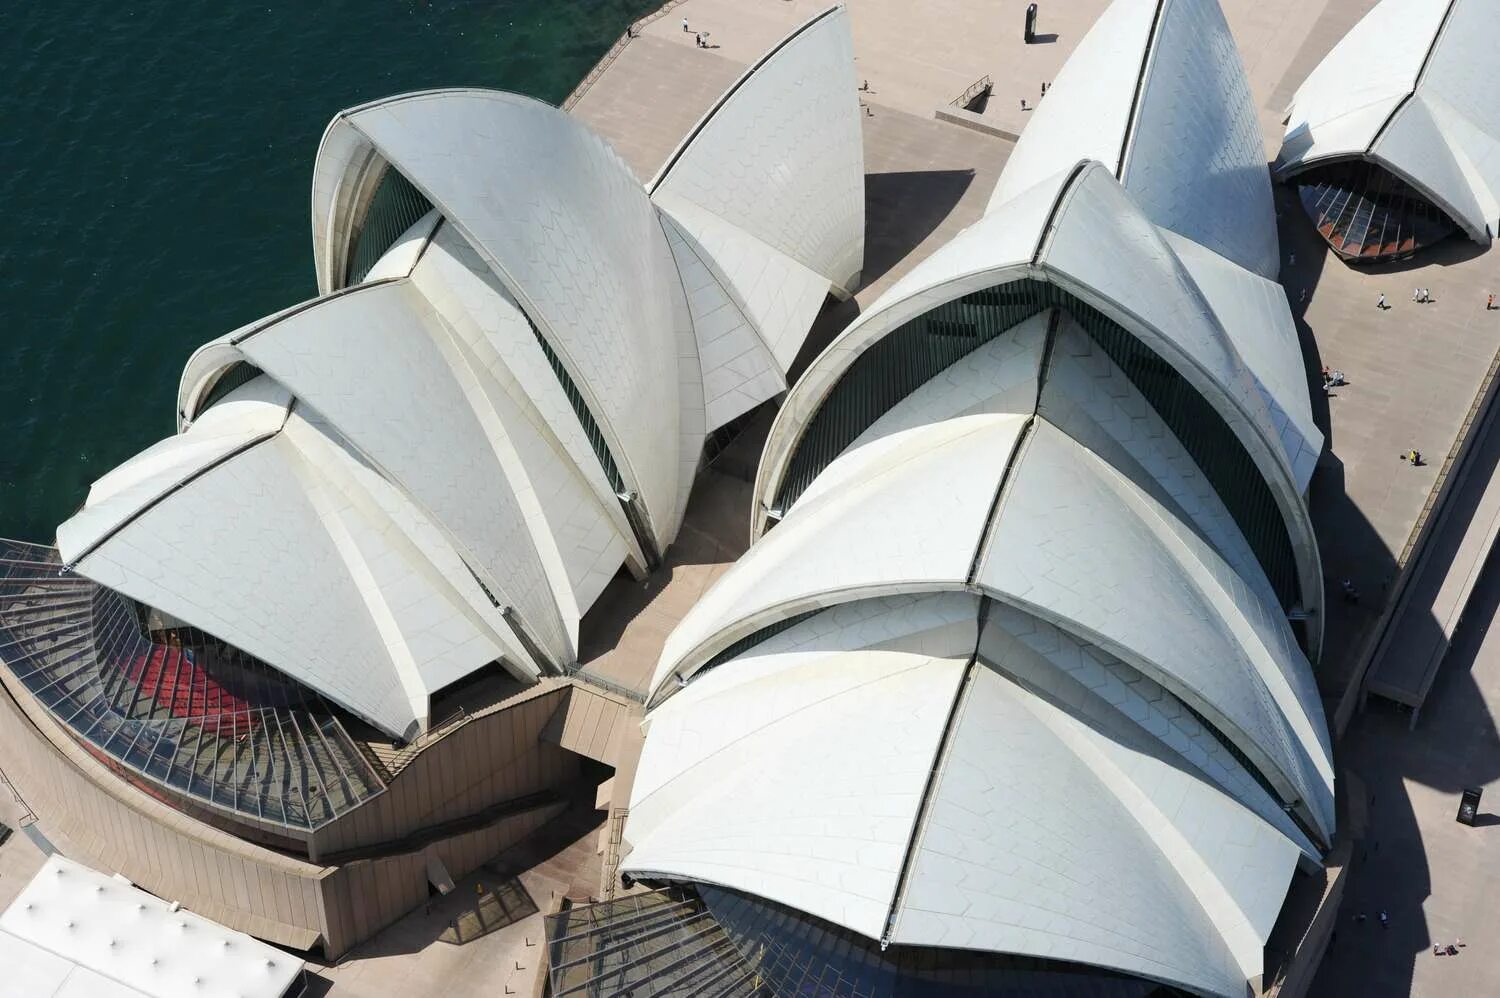 Йорн Уотзон оперный театр в Сиднее. Сиднейская опера Архитектор. Сиднейский оперный театр Австралия. Сидней театр Утзон.